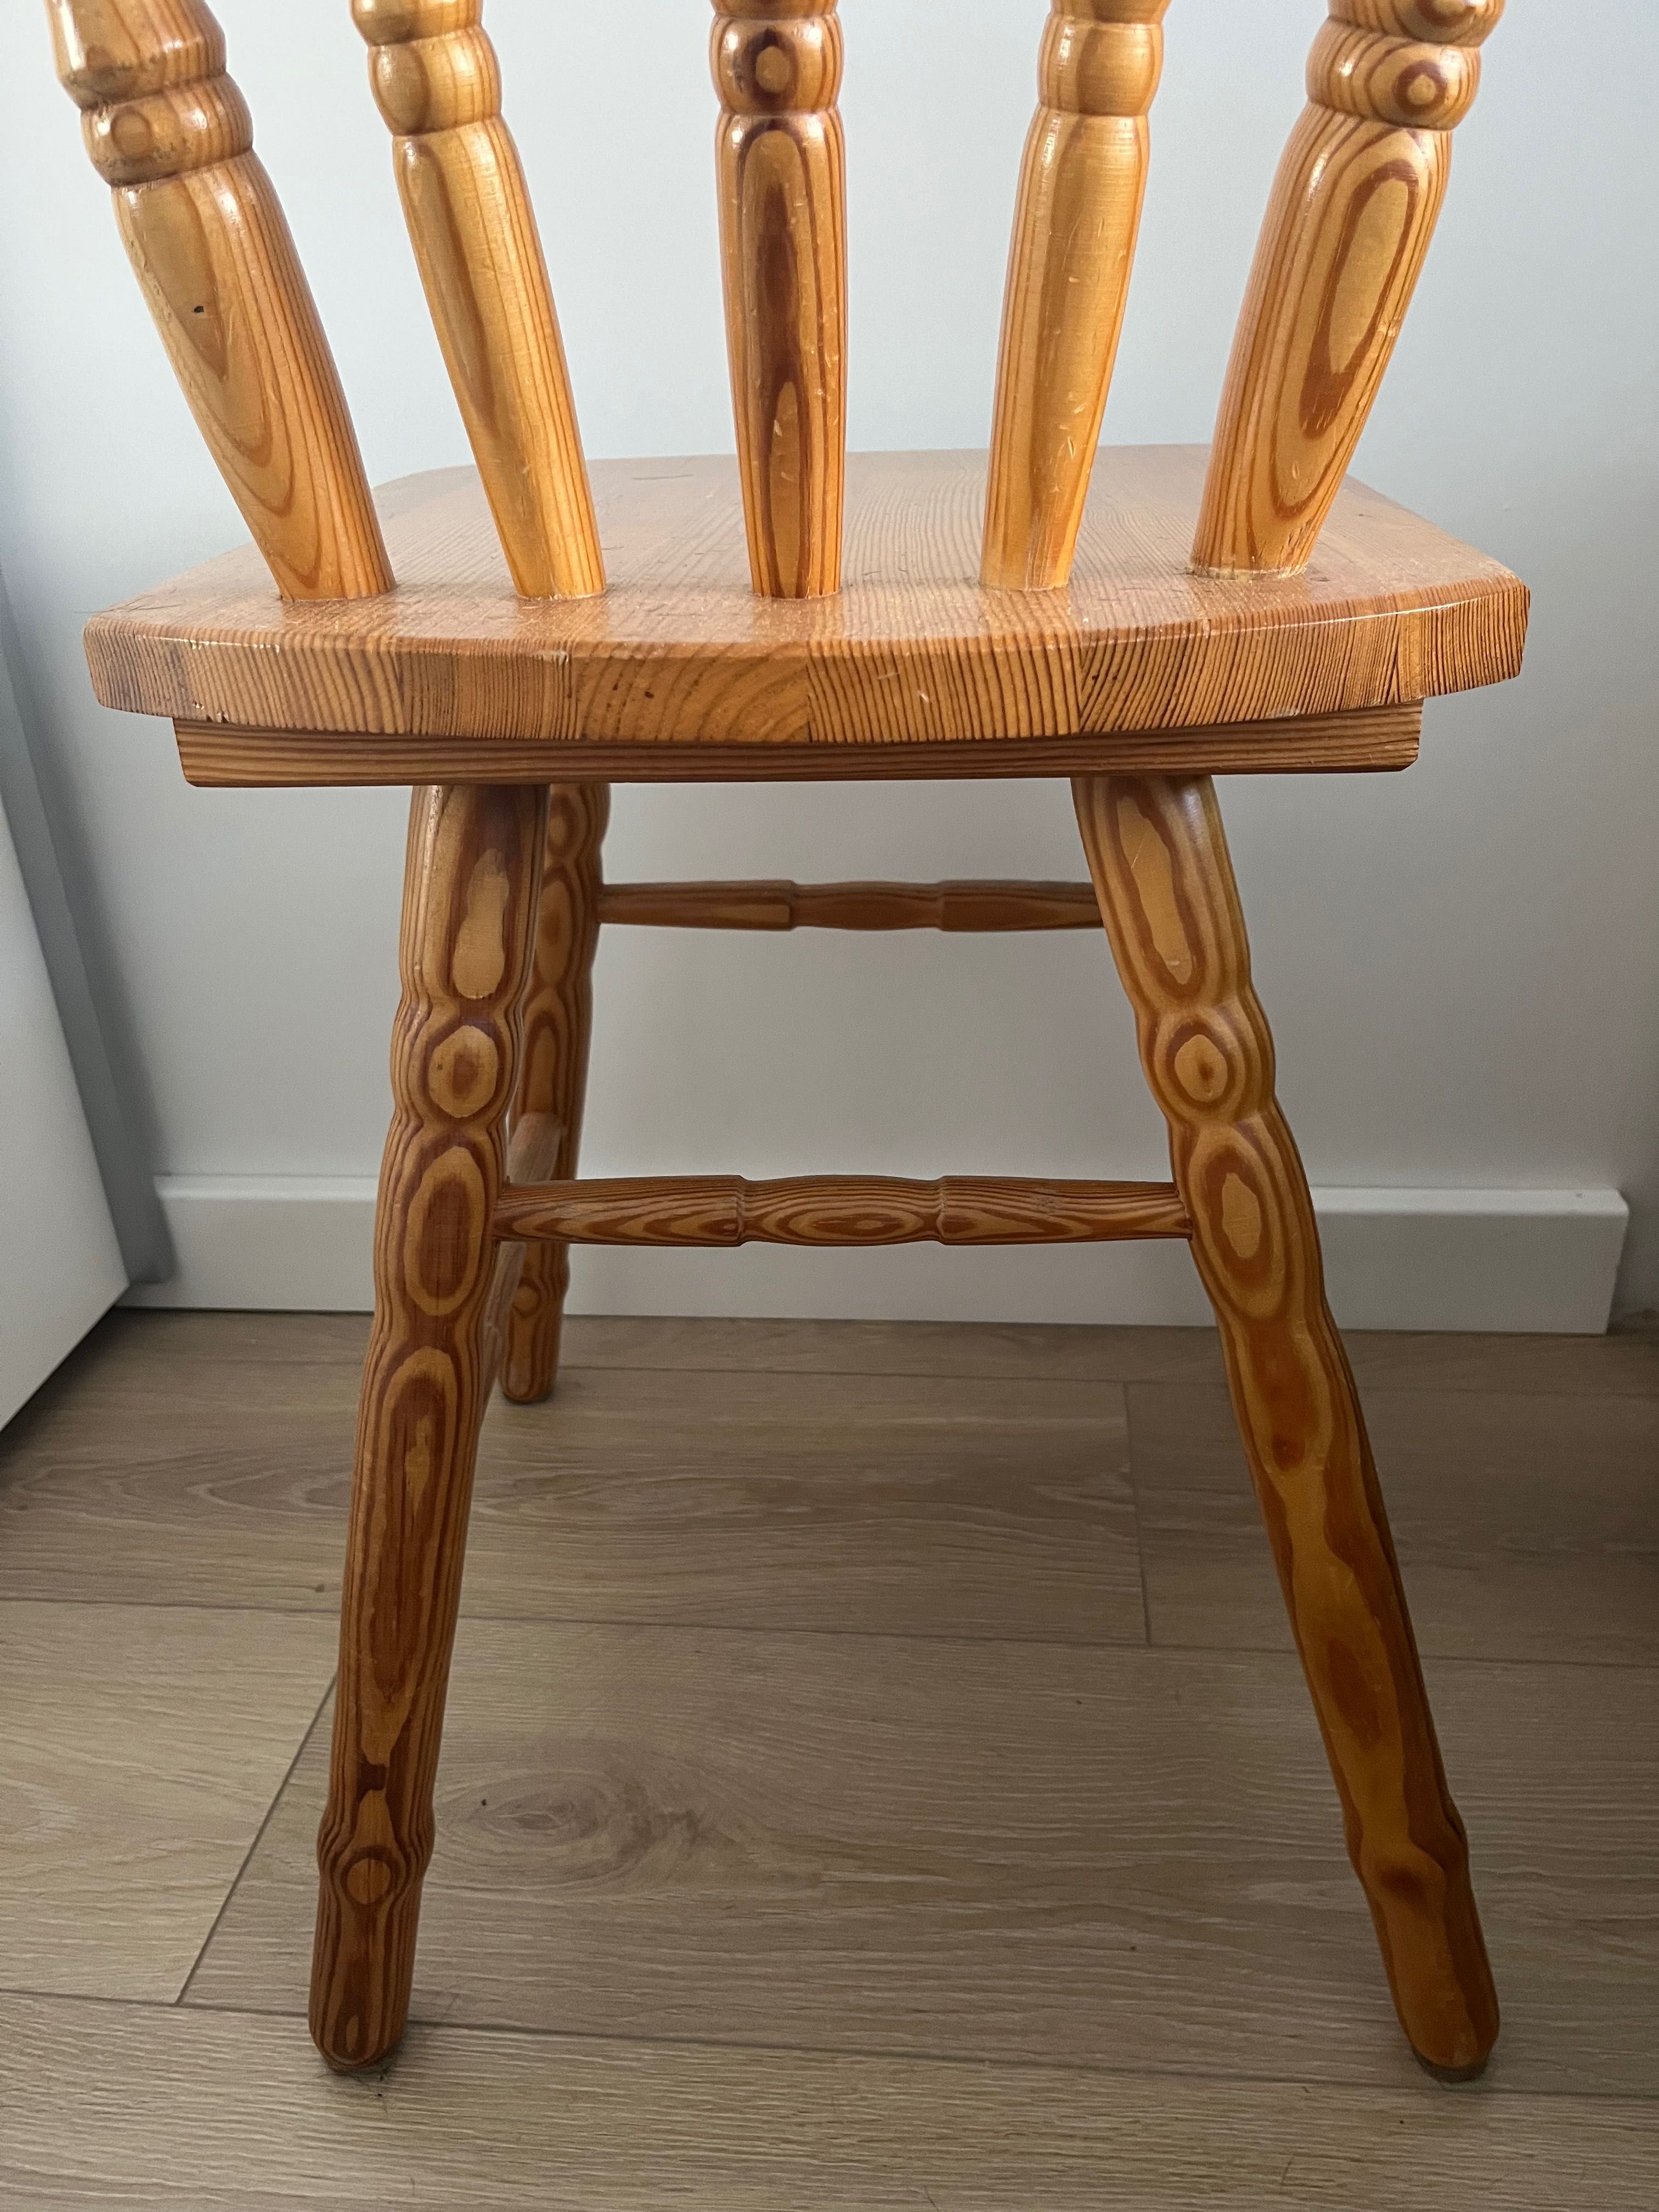 Krzesło drewniane patyczak fabryka mebli giętych prl vintage